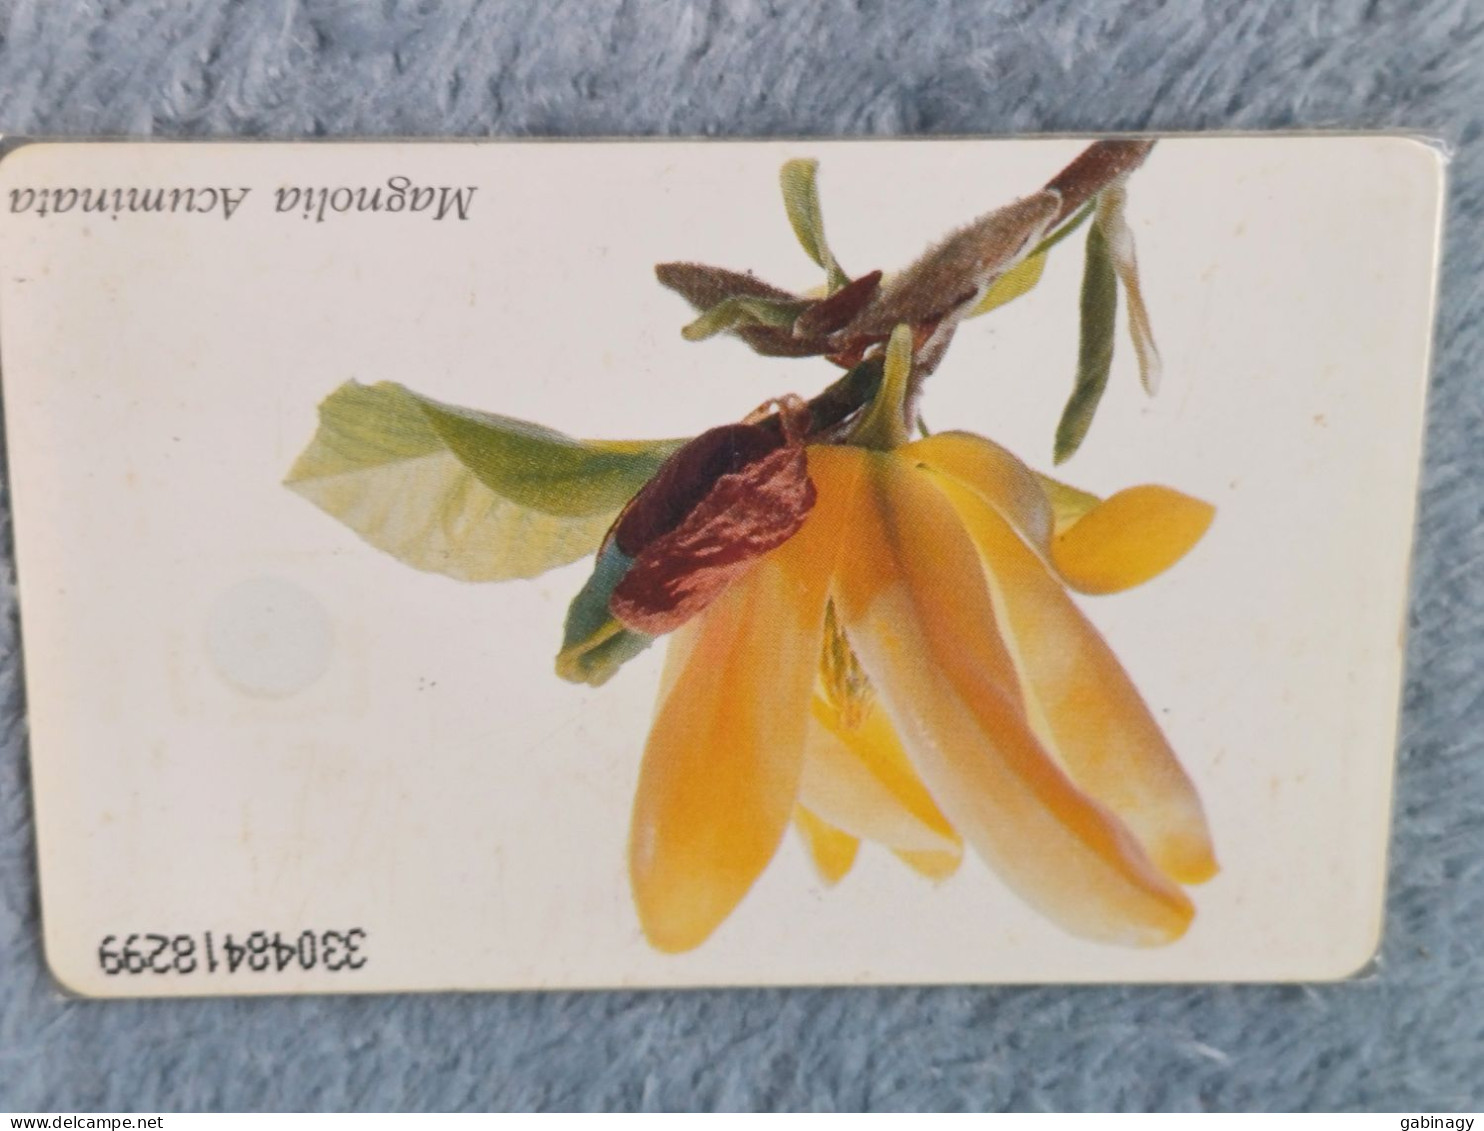 GERMANY-1111 - O 0749 - Mein Schöner Garten Nr.4 - Magnolia Acuminata - 4.000ex. - O-Series: Kundenserie Vom Sammlerservice Ausgeschlossen